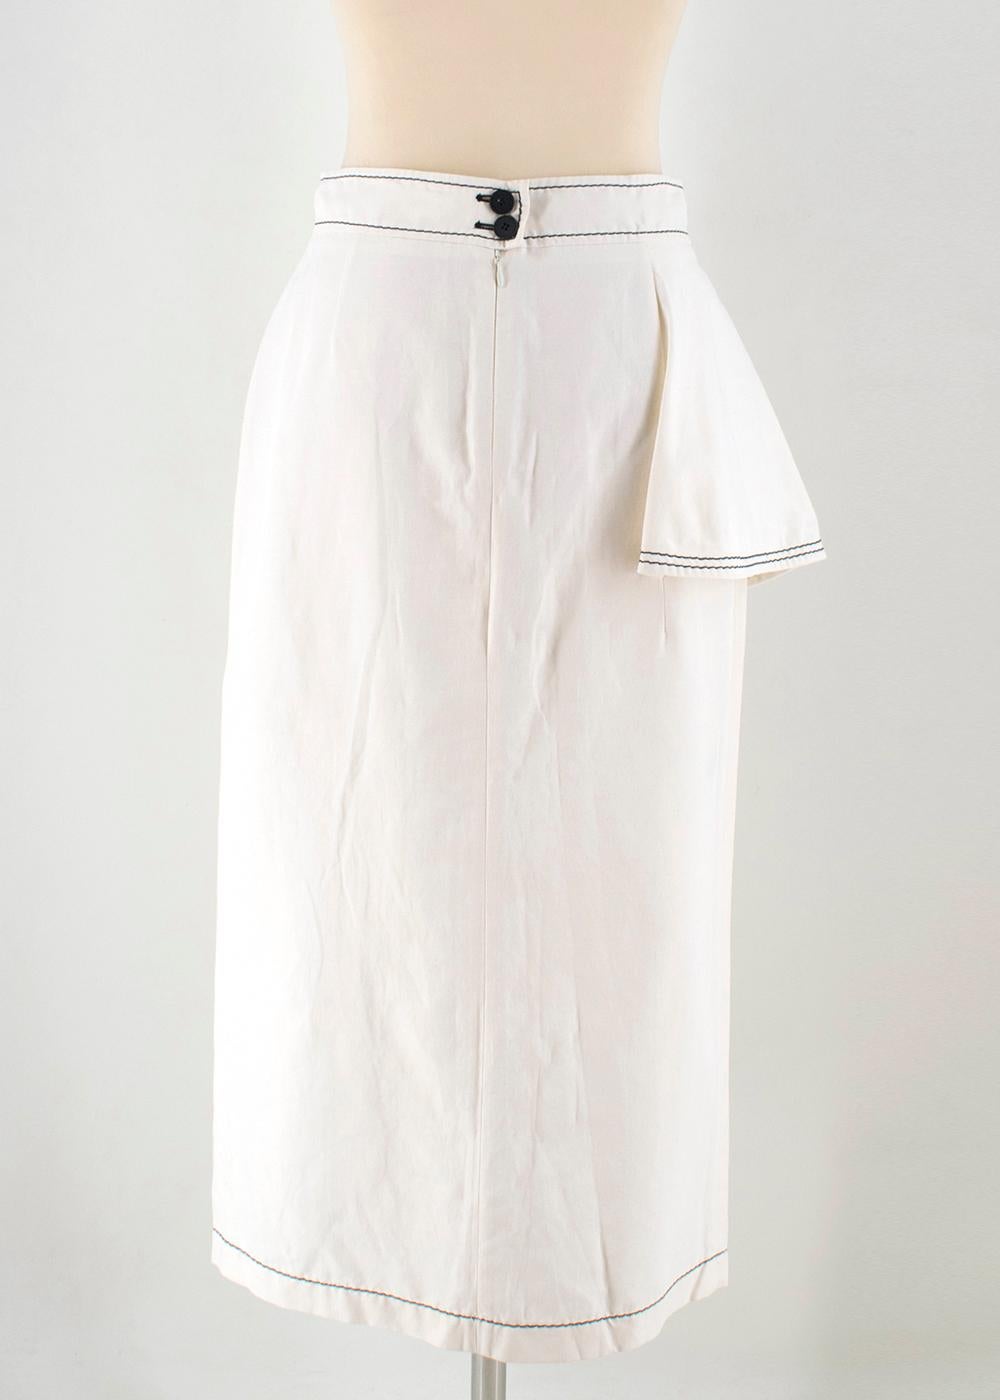 white ruffle skirts